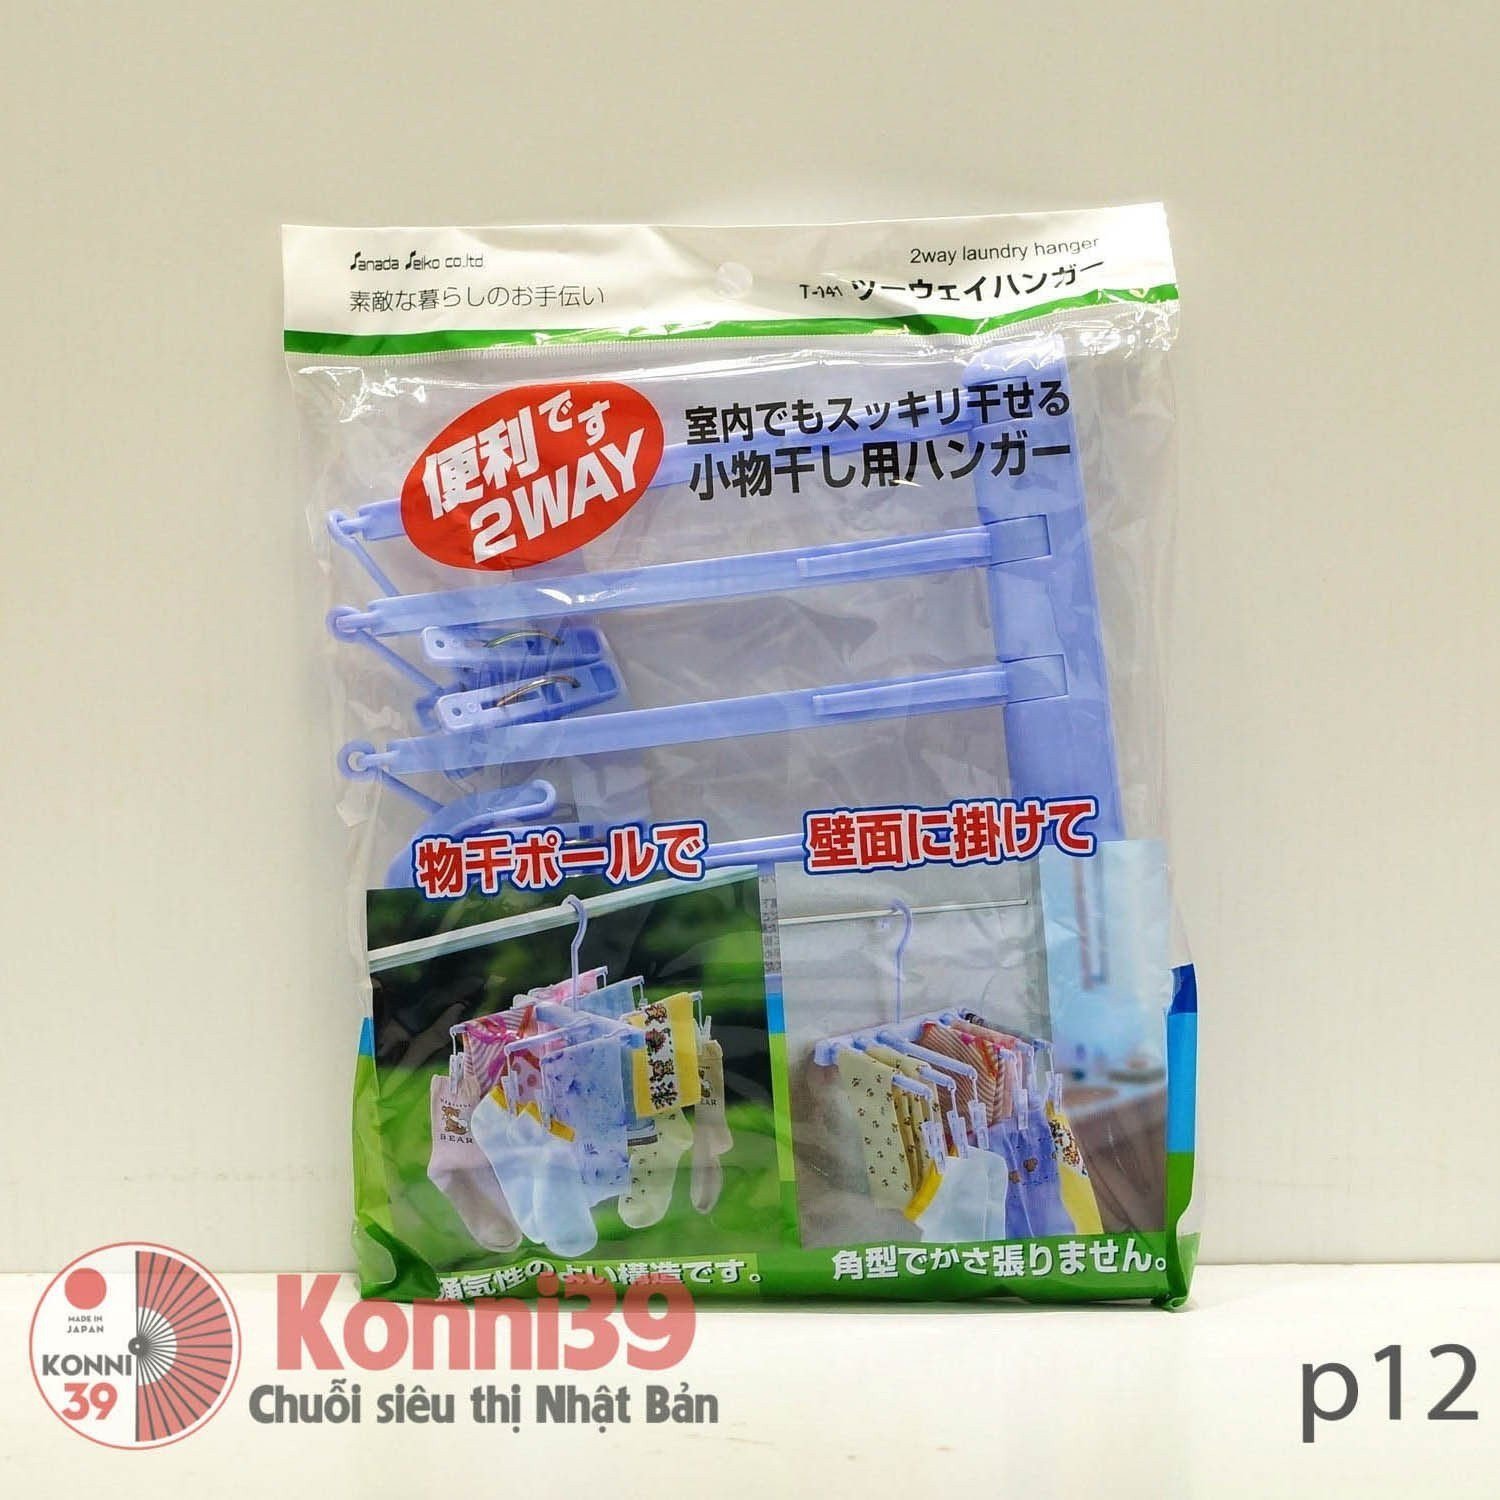 Chùm móc treo song song-Chuỗi siêu thị Nhật Bản - MADE IN JAPAN Konni39 tại Việt Nam